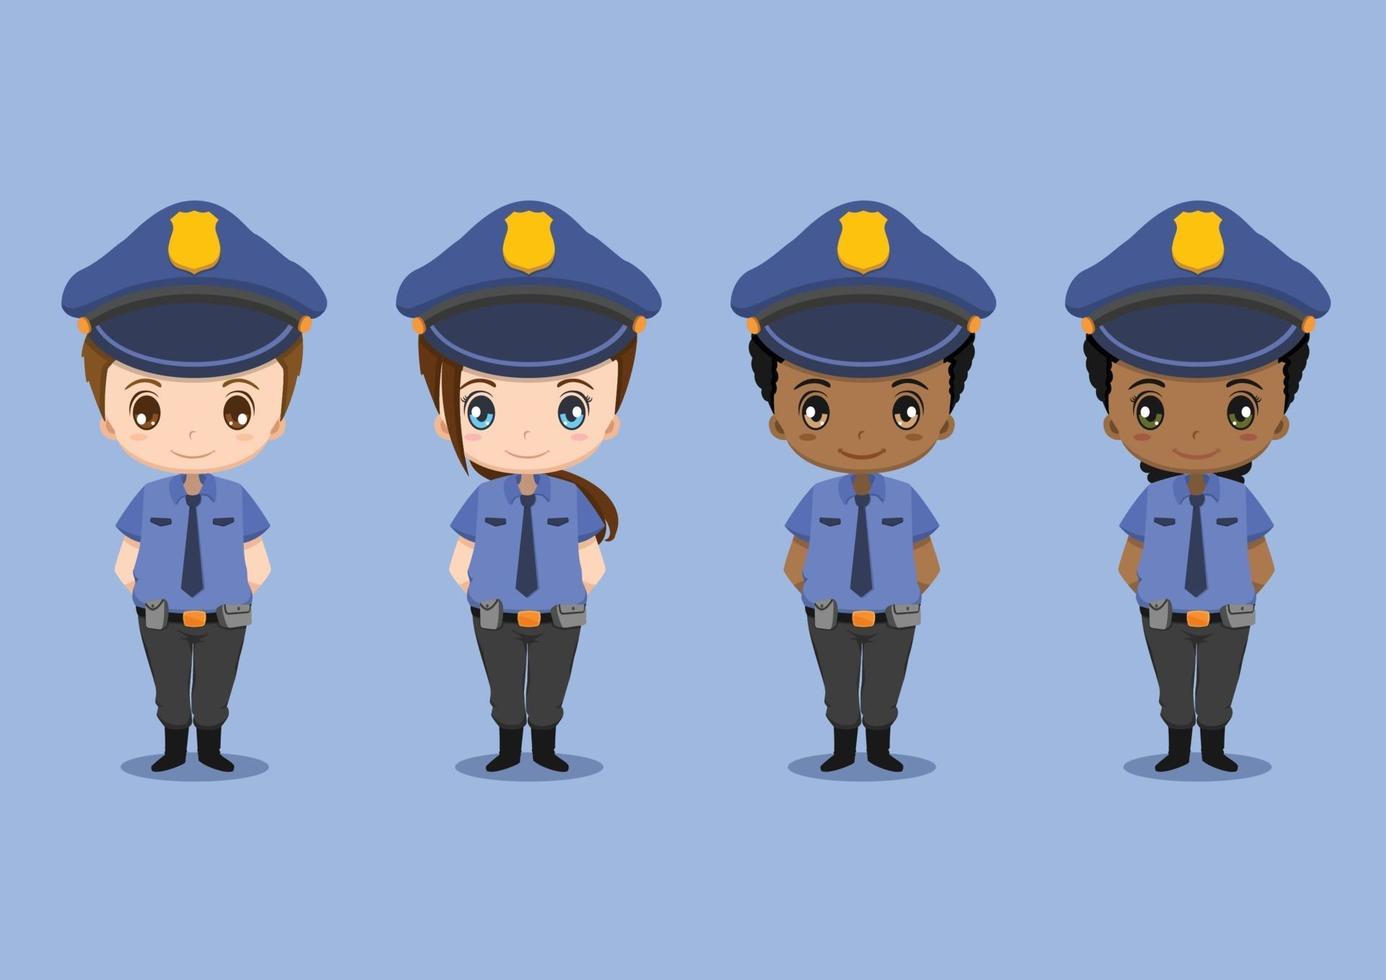 niños lindos con uniformes de policía establecidos vector